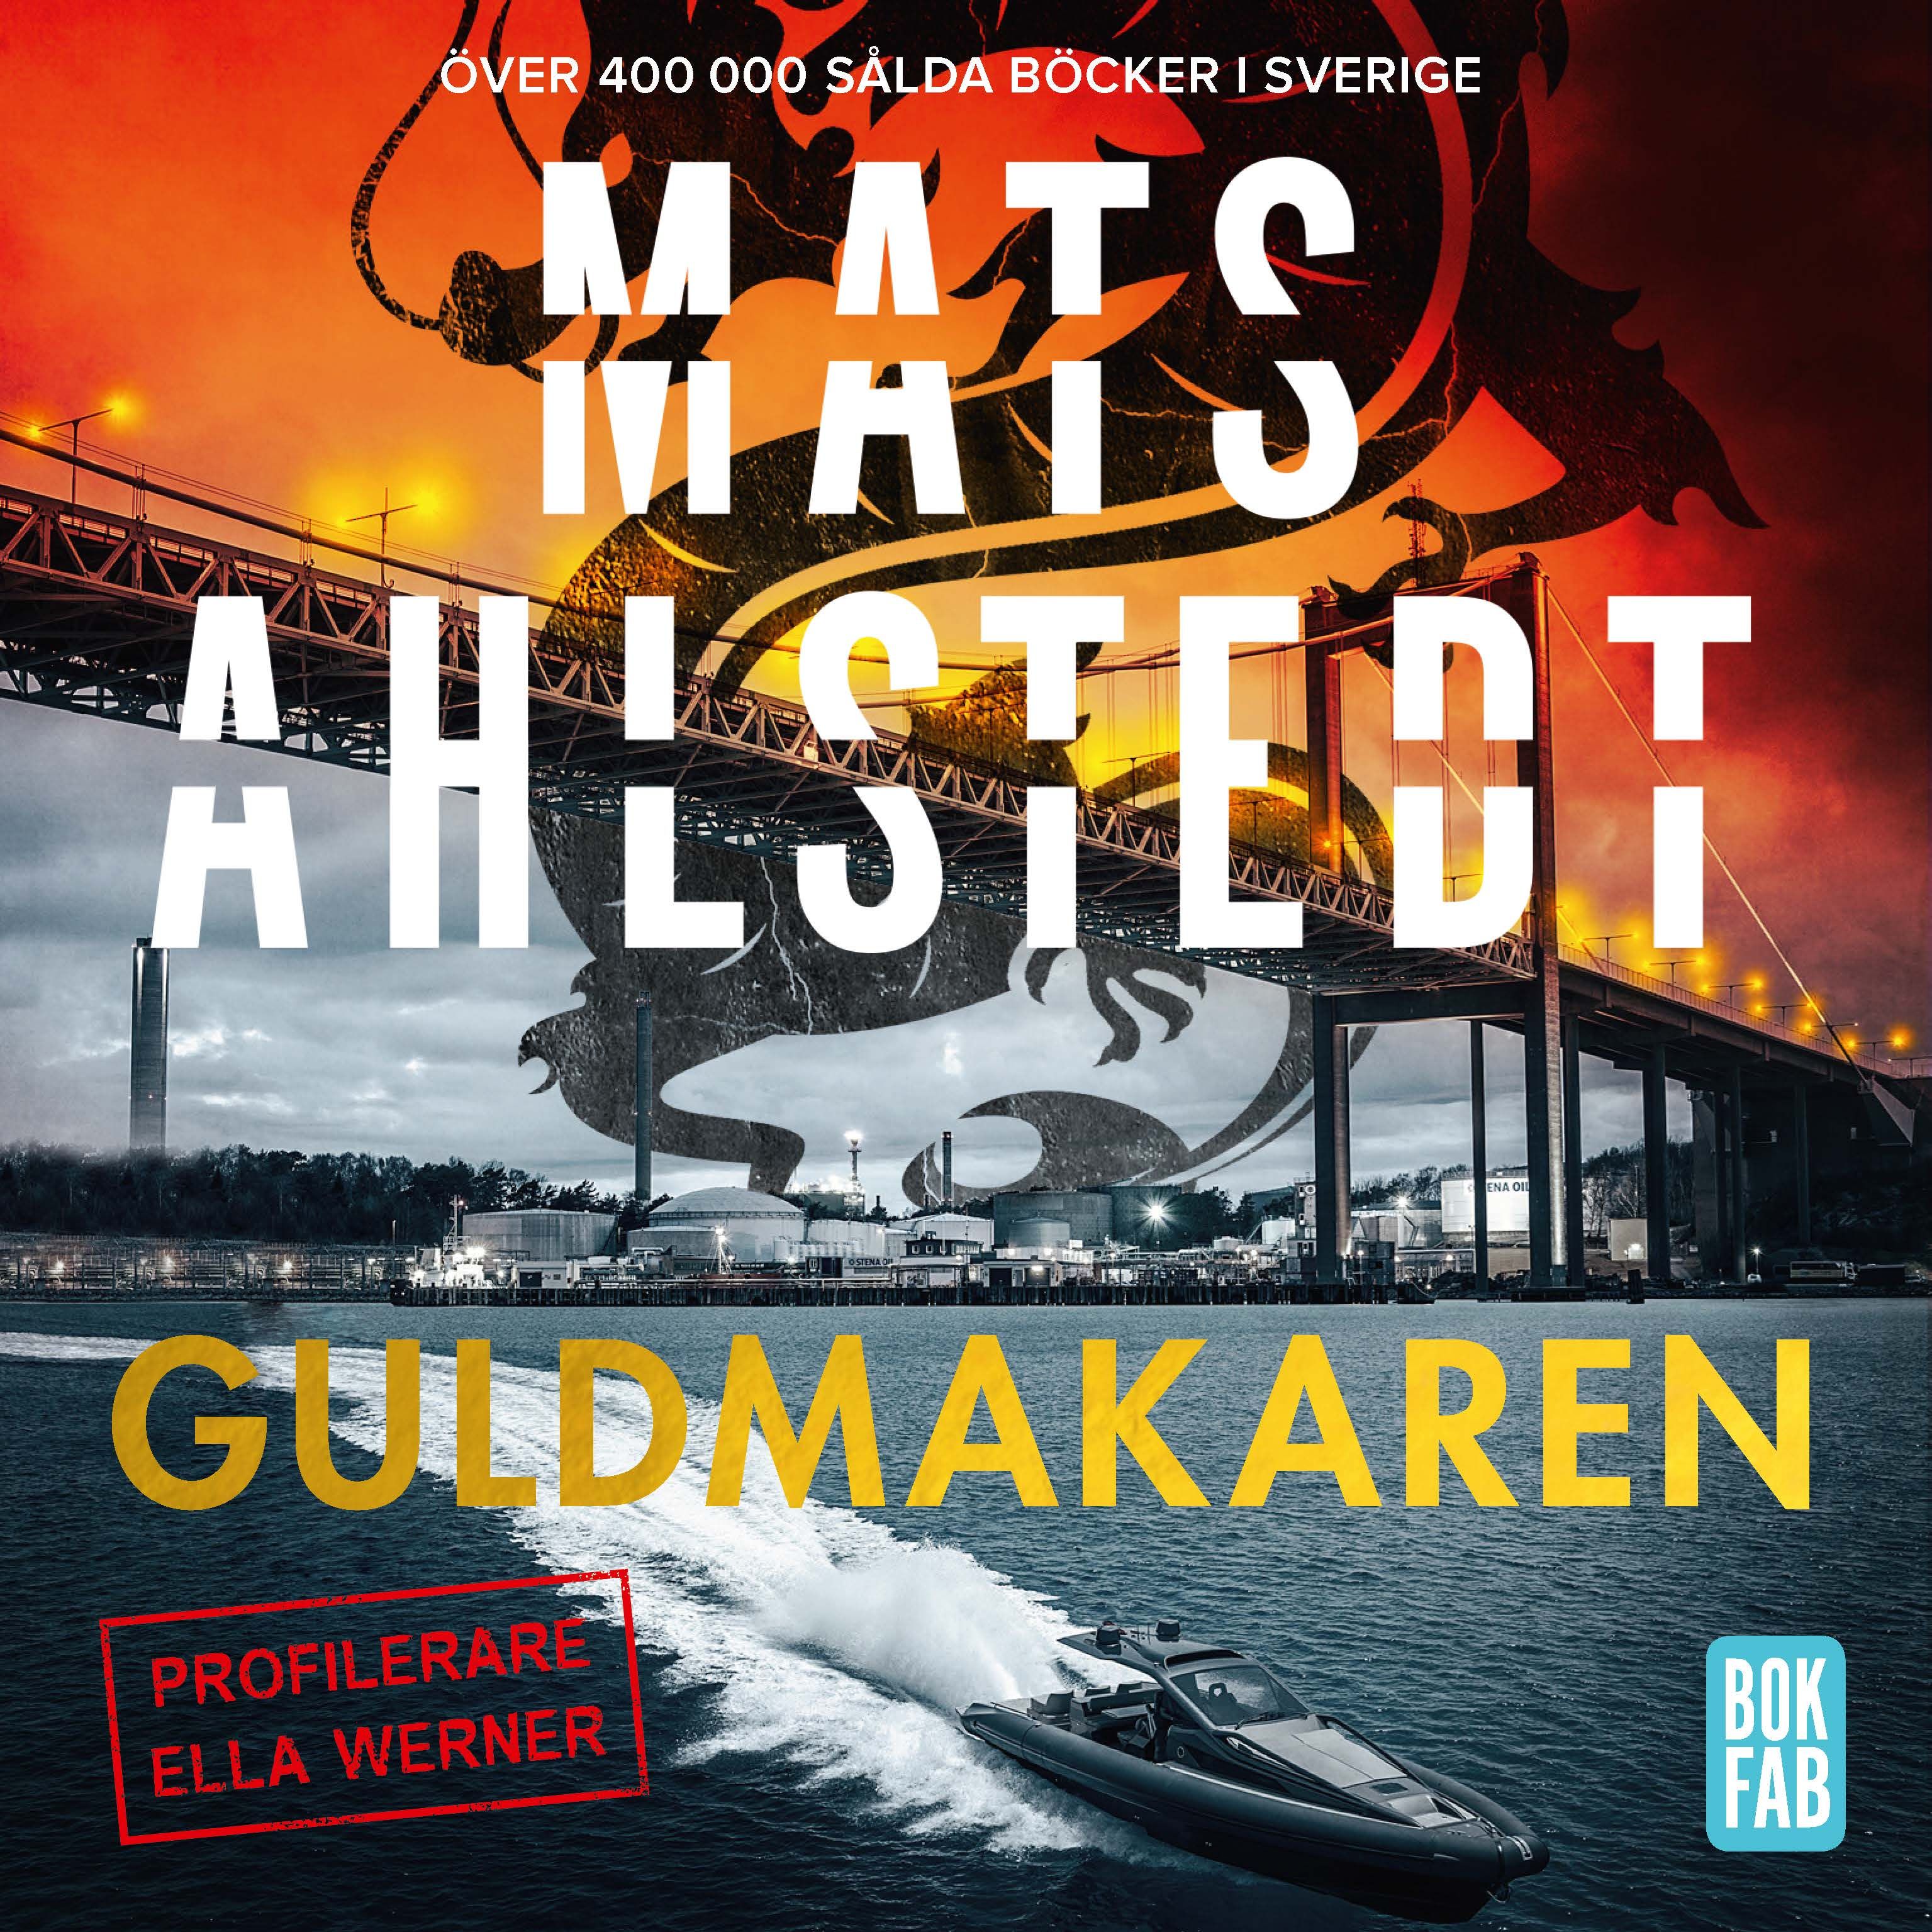 Guldmakaren, ljudbok av Mats Ahlstedt